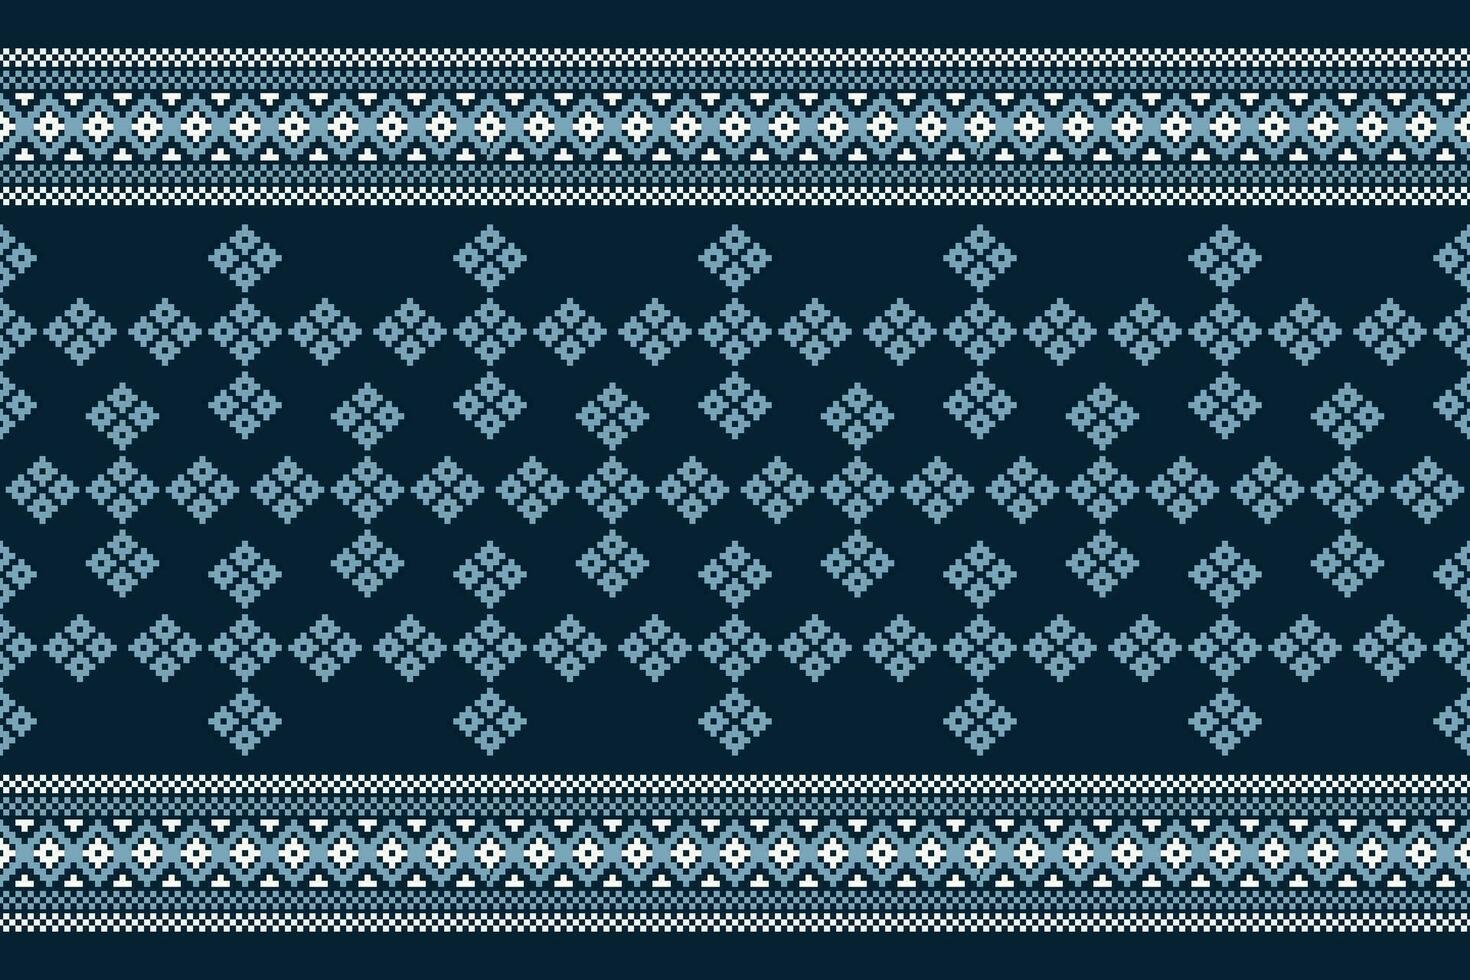 etnisch meetkundig kleding stof patroon kruis steek.ikat borduurwerk etnisch oosters pixel patroon marine blauw achtergrond. abstract,vector,illustratie. textuur, kleding, sjaal, decoratie, motieven, zijde behang. vector